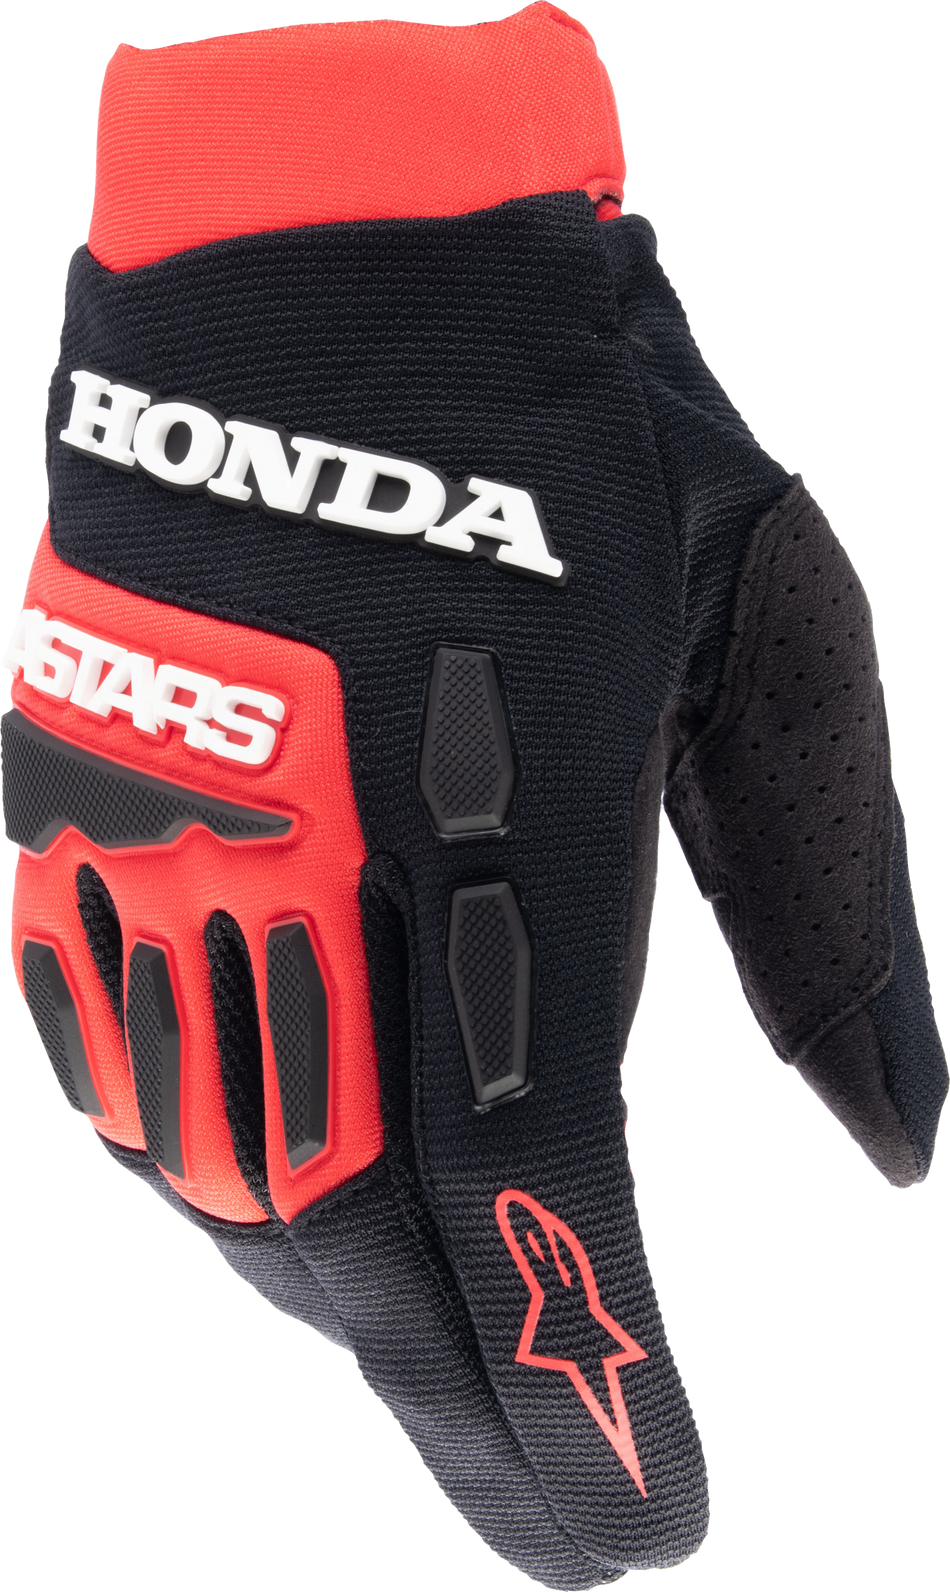 ALPINESTARS Honda Full Bore Gloves Bright Red/Black Sm 3563823-3031-S